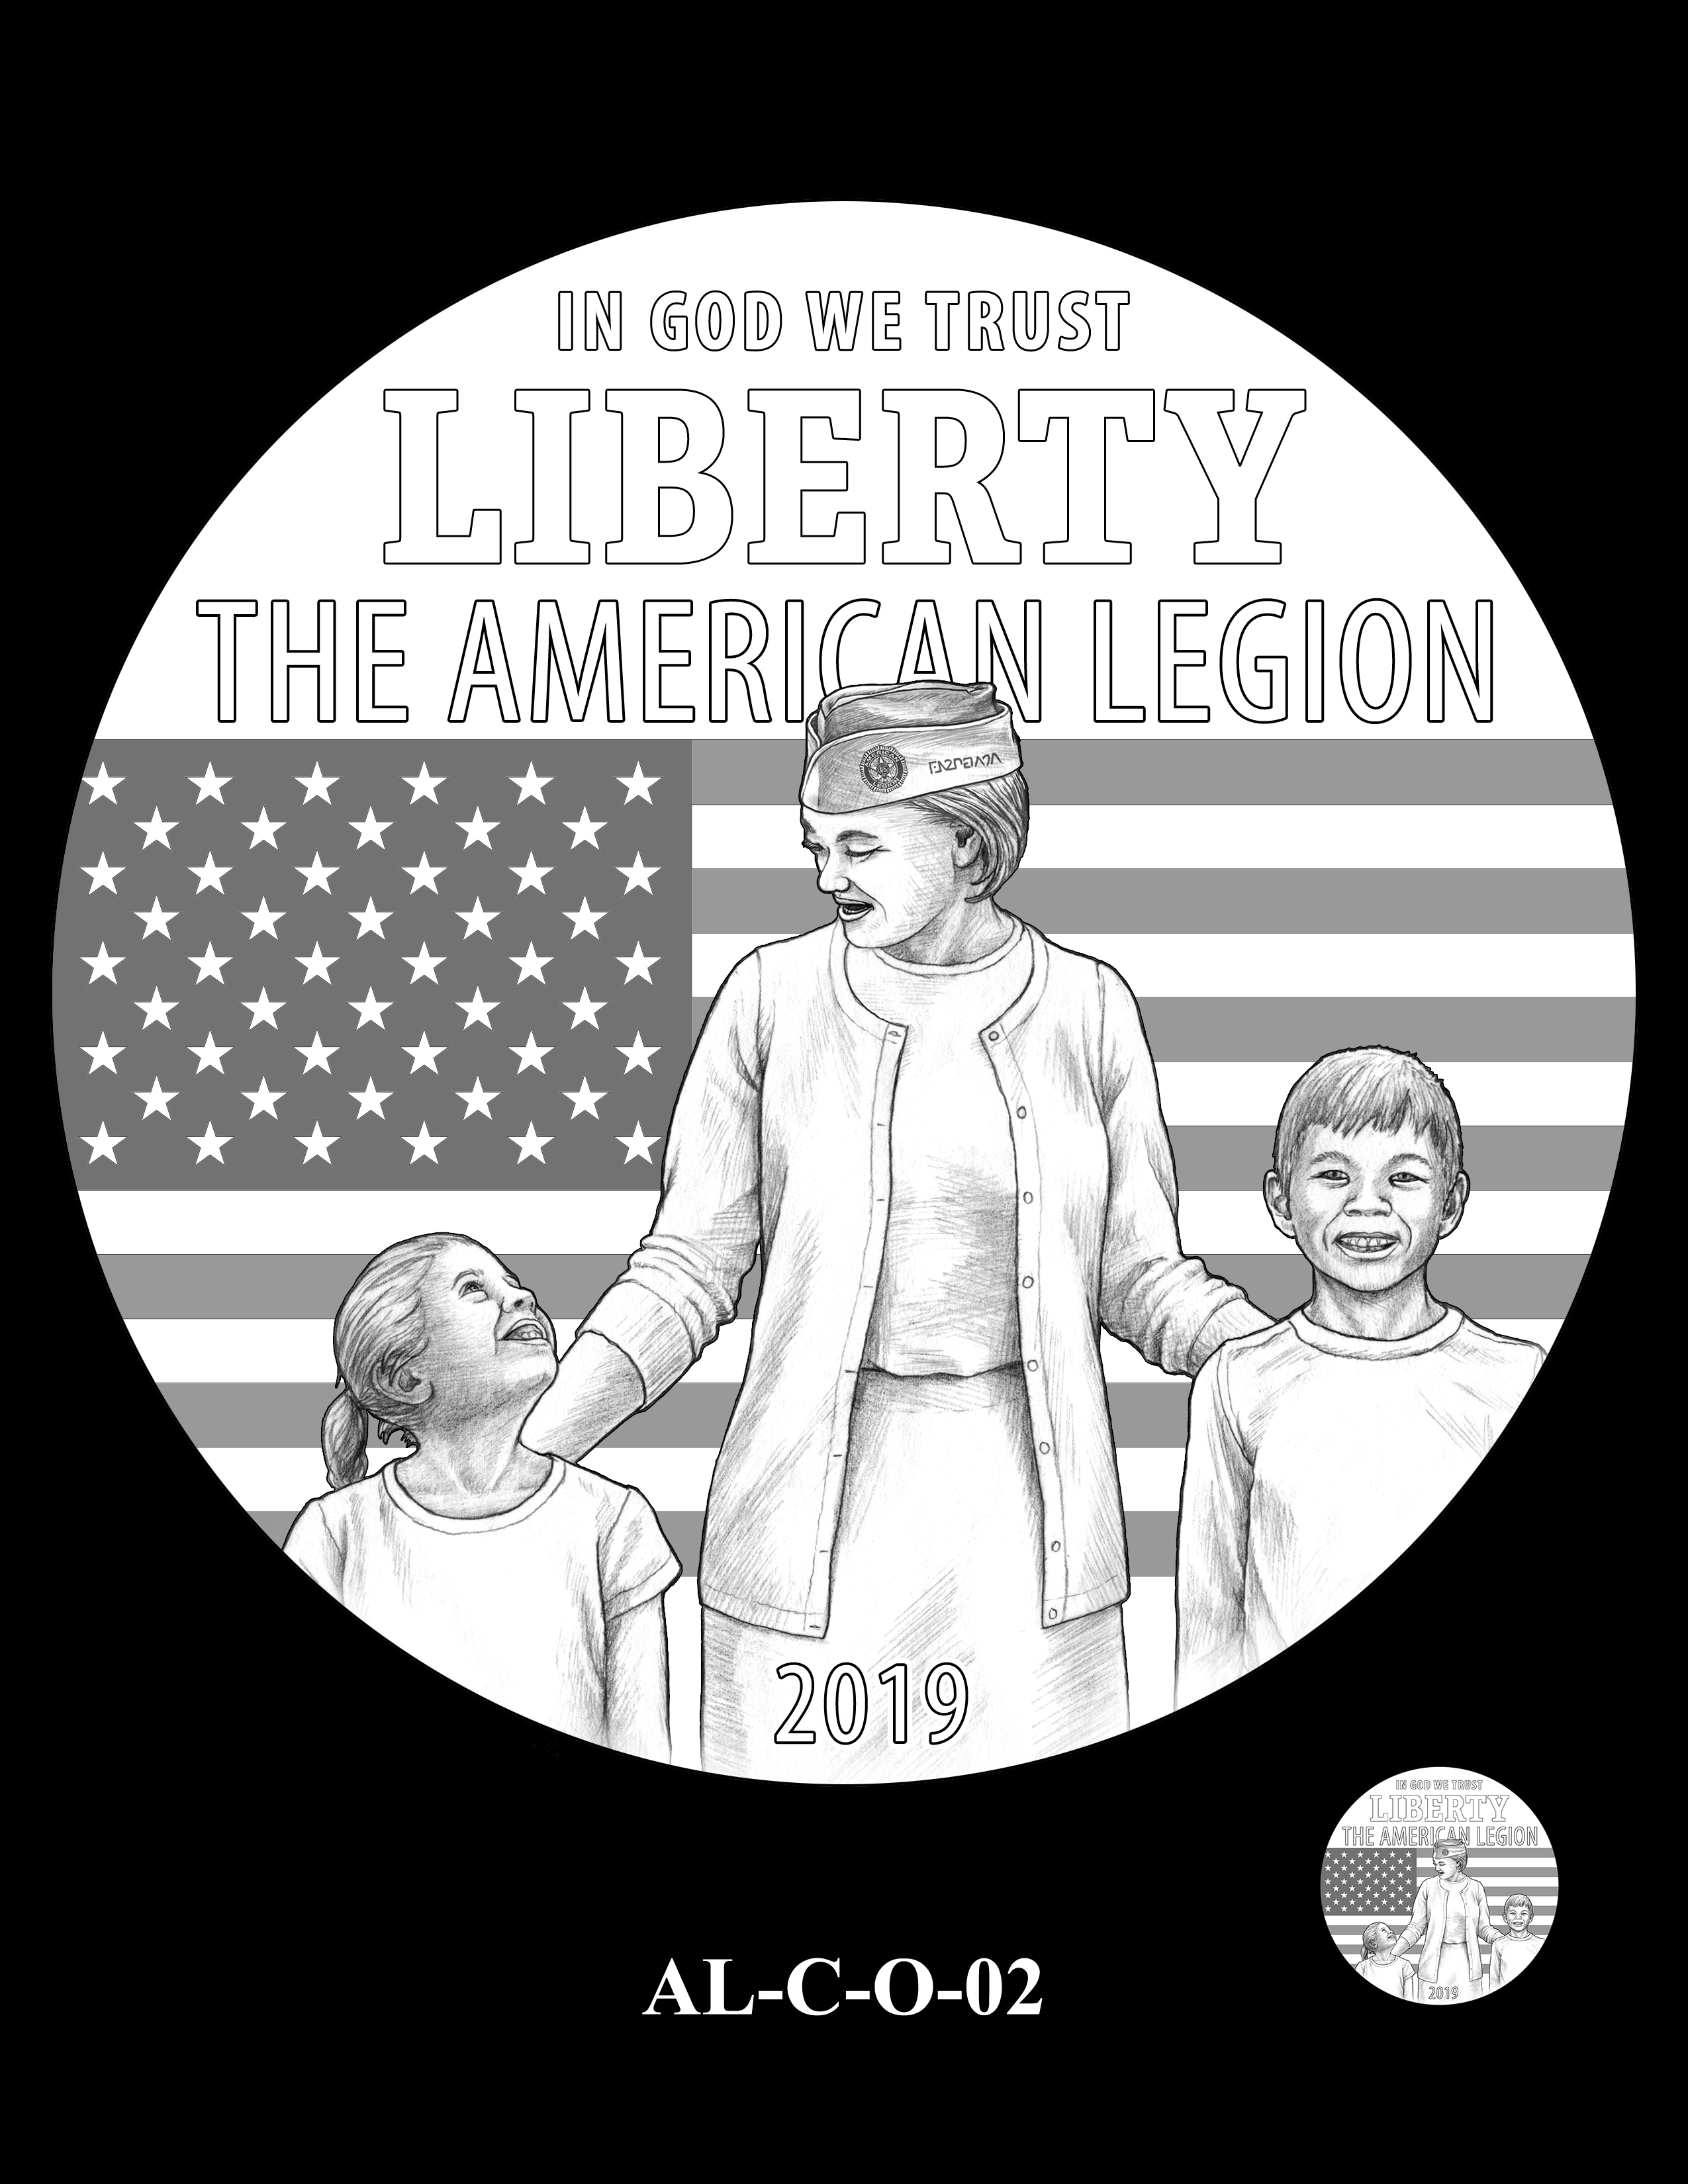 AL-C-O-02 -- 2019 American Legion 100th Anniversary Commemorative Coin Program - Clad Obverse